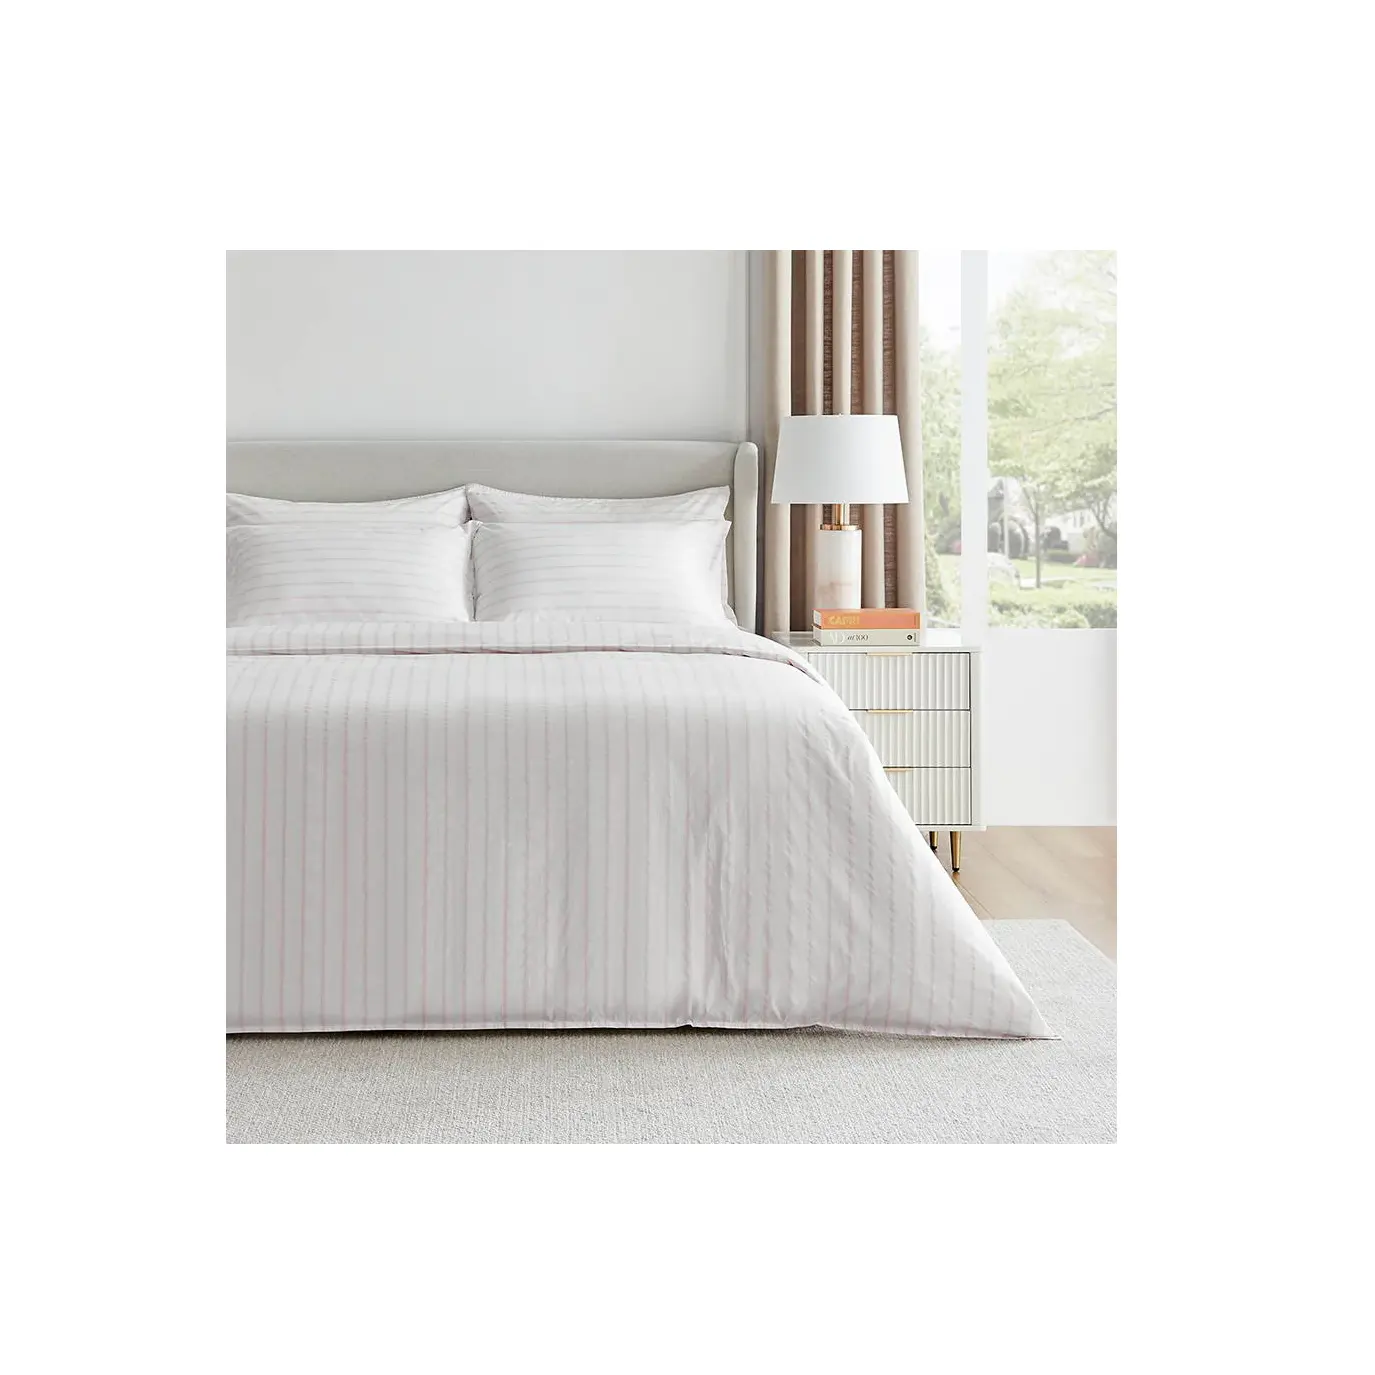 Готовое к отправке постельное белье с мягким и линейным узором привлекательный стиль для спальни простыня для продажи экспортерами